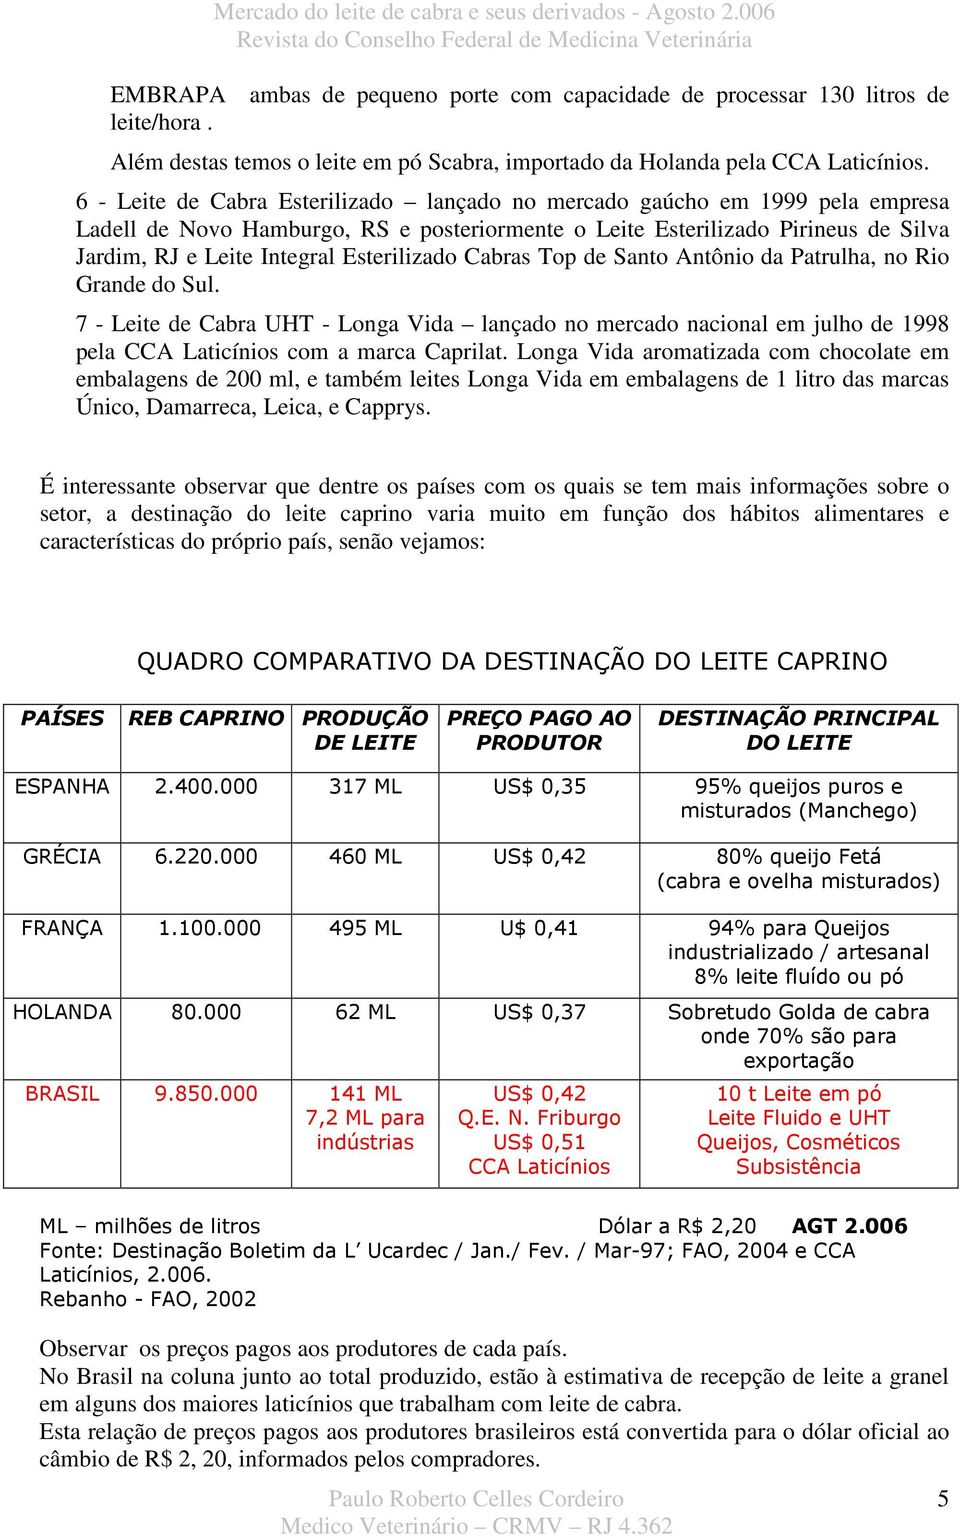 Esterilizado Cabras Top de Santo Antônio da Patrulha, no Rio Grande do Sul. 7 - Leite de Cabra UHT - Longa Vida lançado no mercado nacional em julho de 1998 pela CCA Laticínios com a marca Caprilat.